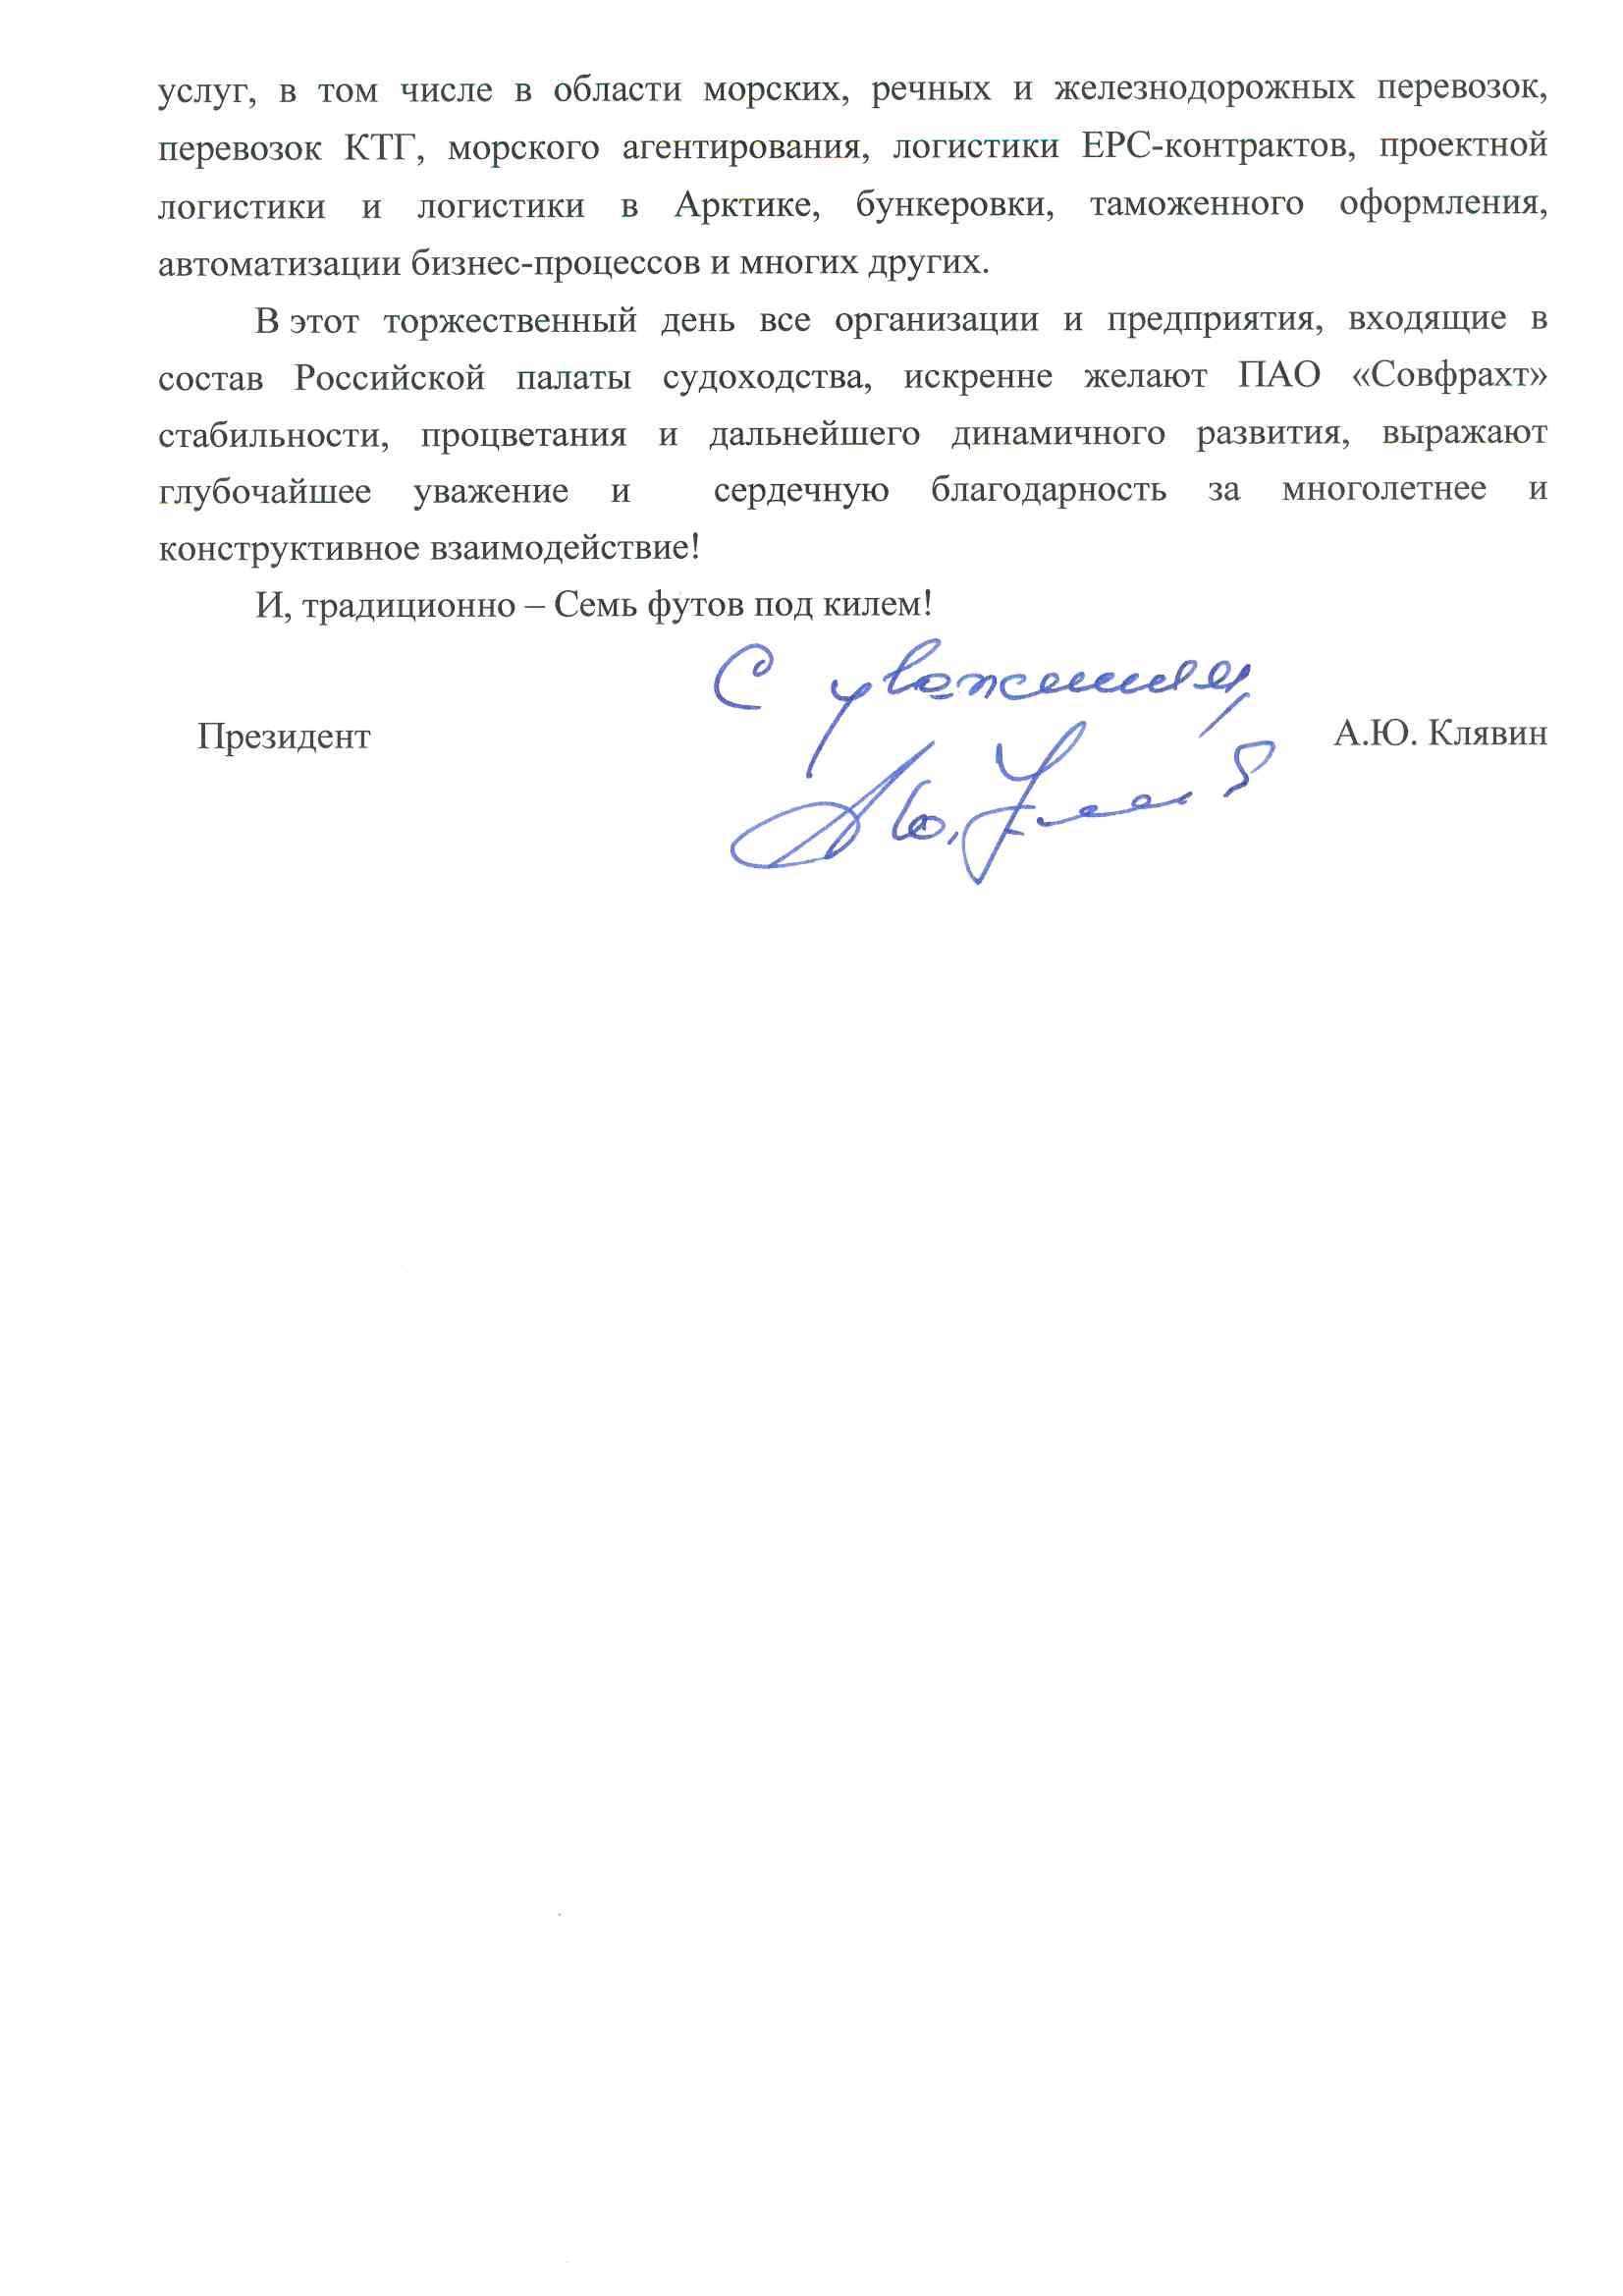 Российская палата судоходства поздравление 90 лет СФХ